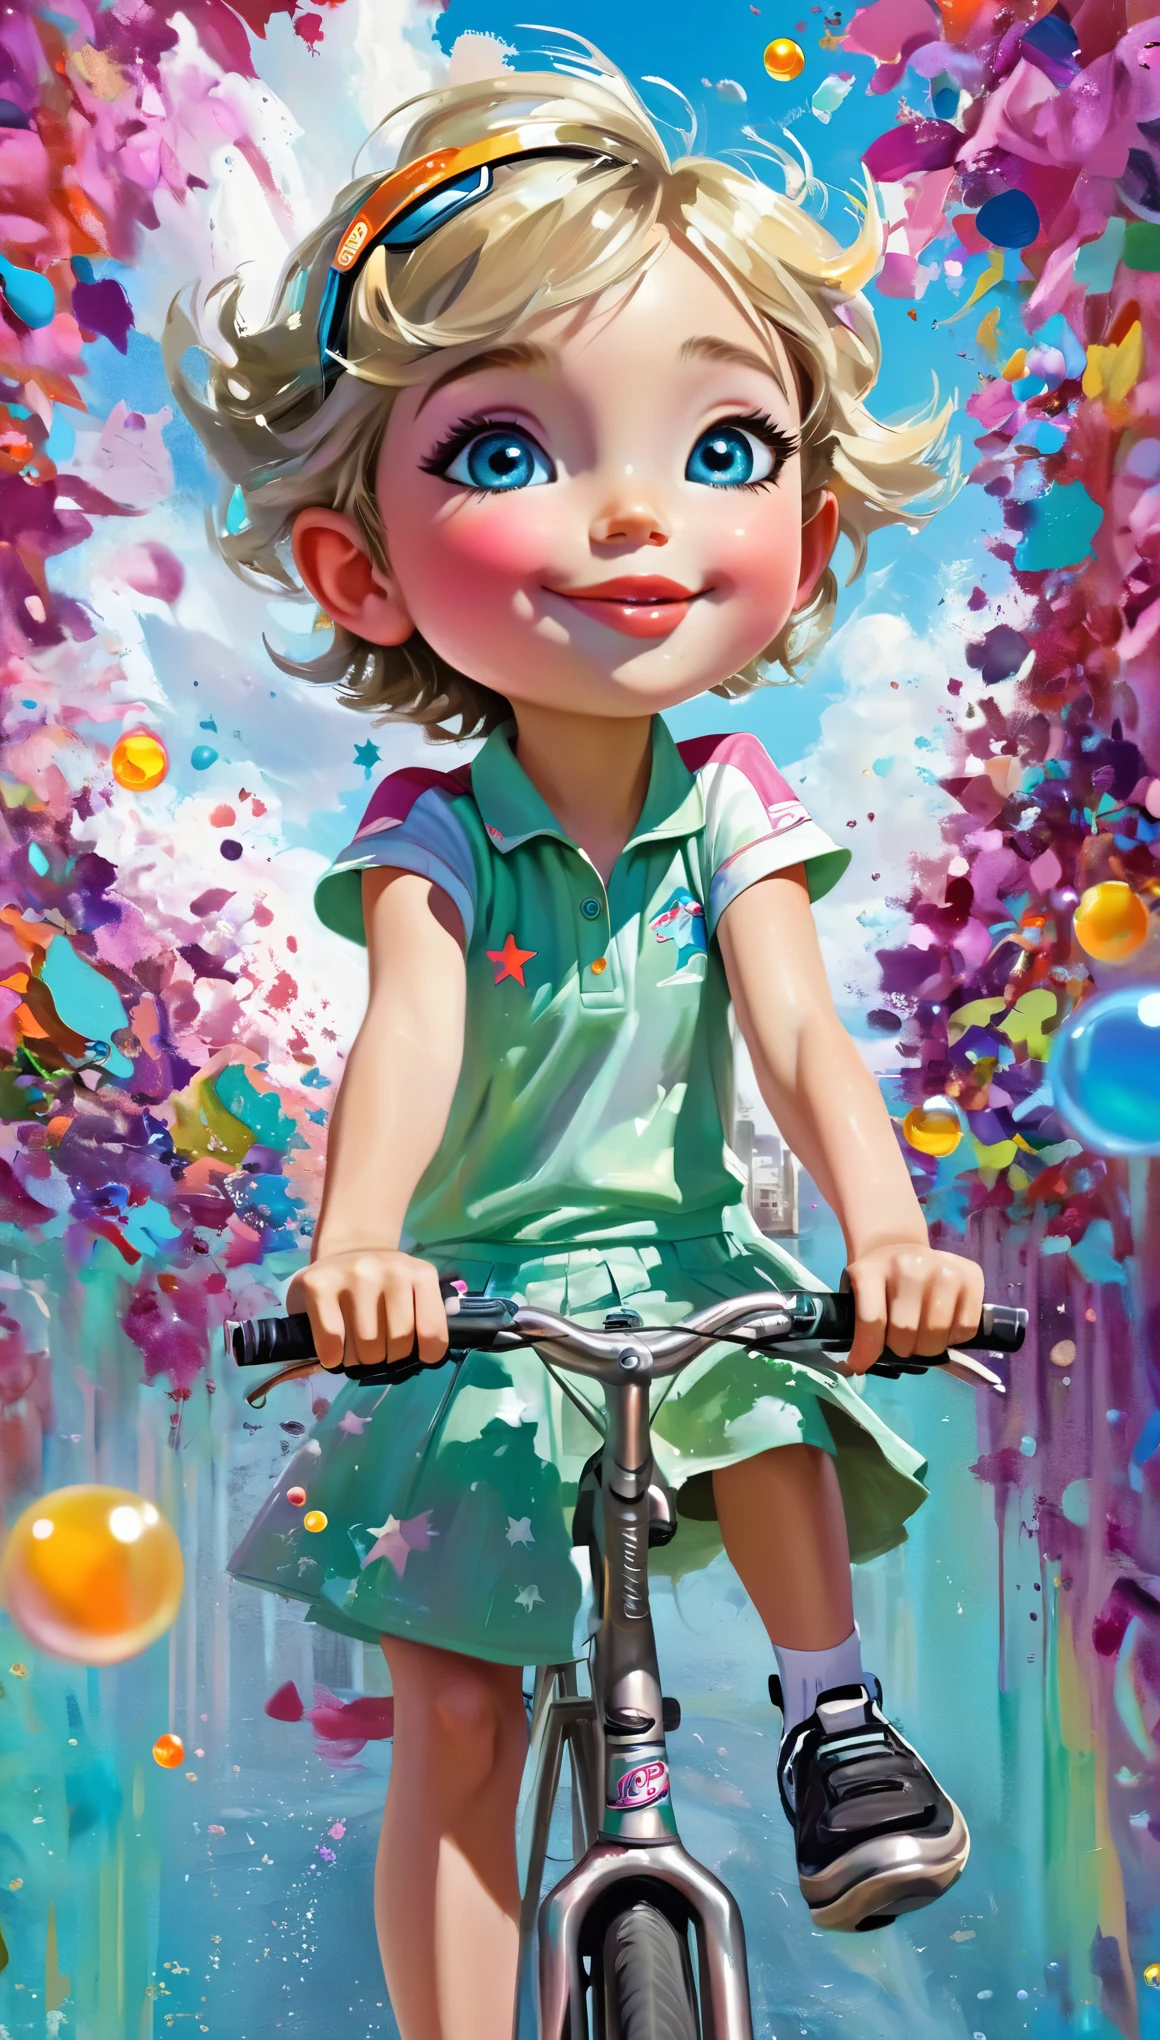 ((шедевр: 1.5, широкий дальний план: 1.5)). (мальчик на велосипеде, the shot has to be широкий дальний план: 1.5, спортивная одежда, Создайте хрупкую и скромную фею, исследующую (одежда и детали с большим разнообразием ярких цветовых тонов, голубой, цвета земли, апельсины, зелень:1.3)).(идеальный composition:1.4), все чрезвычайно подробно и реалистично с юношескими чертами.., A идеальный, Жизнерадостный, улыбается, веселье, Ее губы имеют однородный оттенок розового.. Includes веселье and impressive features. Очень реалистичные глаза. Его глаза, лицо и тело важны и должны быть гиперреалистичными.. очень подробно и красиво. В высоком разрешении и деталях, включает в себя множество деталей, таких как звезды, галактики, Цветные пузыри, цветные лепестки, яркие капли краски, стены с граффити, переливчатость, и много энергии и эмоций. ((кататься на велосипеде важно! Включает фэнтезийные детали:1.6)), Улучшенные детали, переливчатость, красочный и яркий ветер, и пыльца. Обратите особое внимание на его лицо и убедитесь, что оно красиво детализировано и реалистично..... Камера: This art is dreamlike and ethereal and the Камера should emphasize those features.... Создайте что-то поразительно красивое. Используйте методы динамической композиции., ((творческая сцена)),((идеальный, тщательно подробный:1.4)), ((полный кадр: 1.4, динамичная поза:1.3)), ((Лучшее качество)), ((шедевр) ) , 3d, (гипер подробный: 1.3), ((городской пейзаж: 1.3)), (фотореалистичный: 1.4), ((Освещение ночного кинотеатра при слабом освещении: 1.2)).32 тыс..